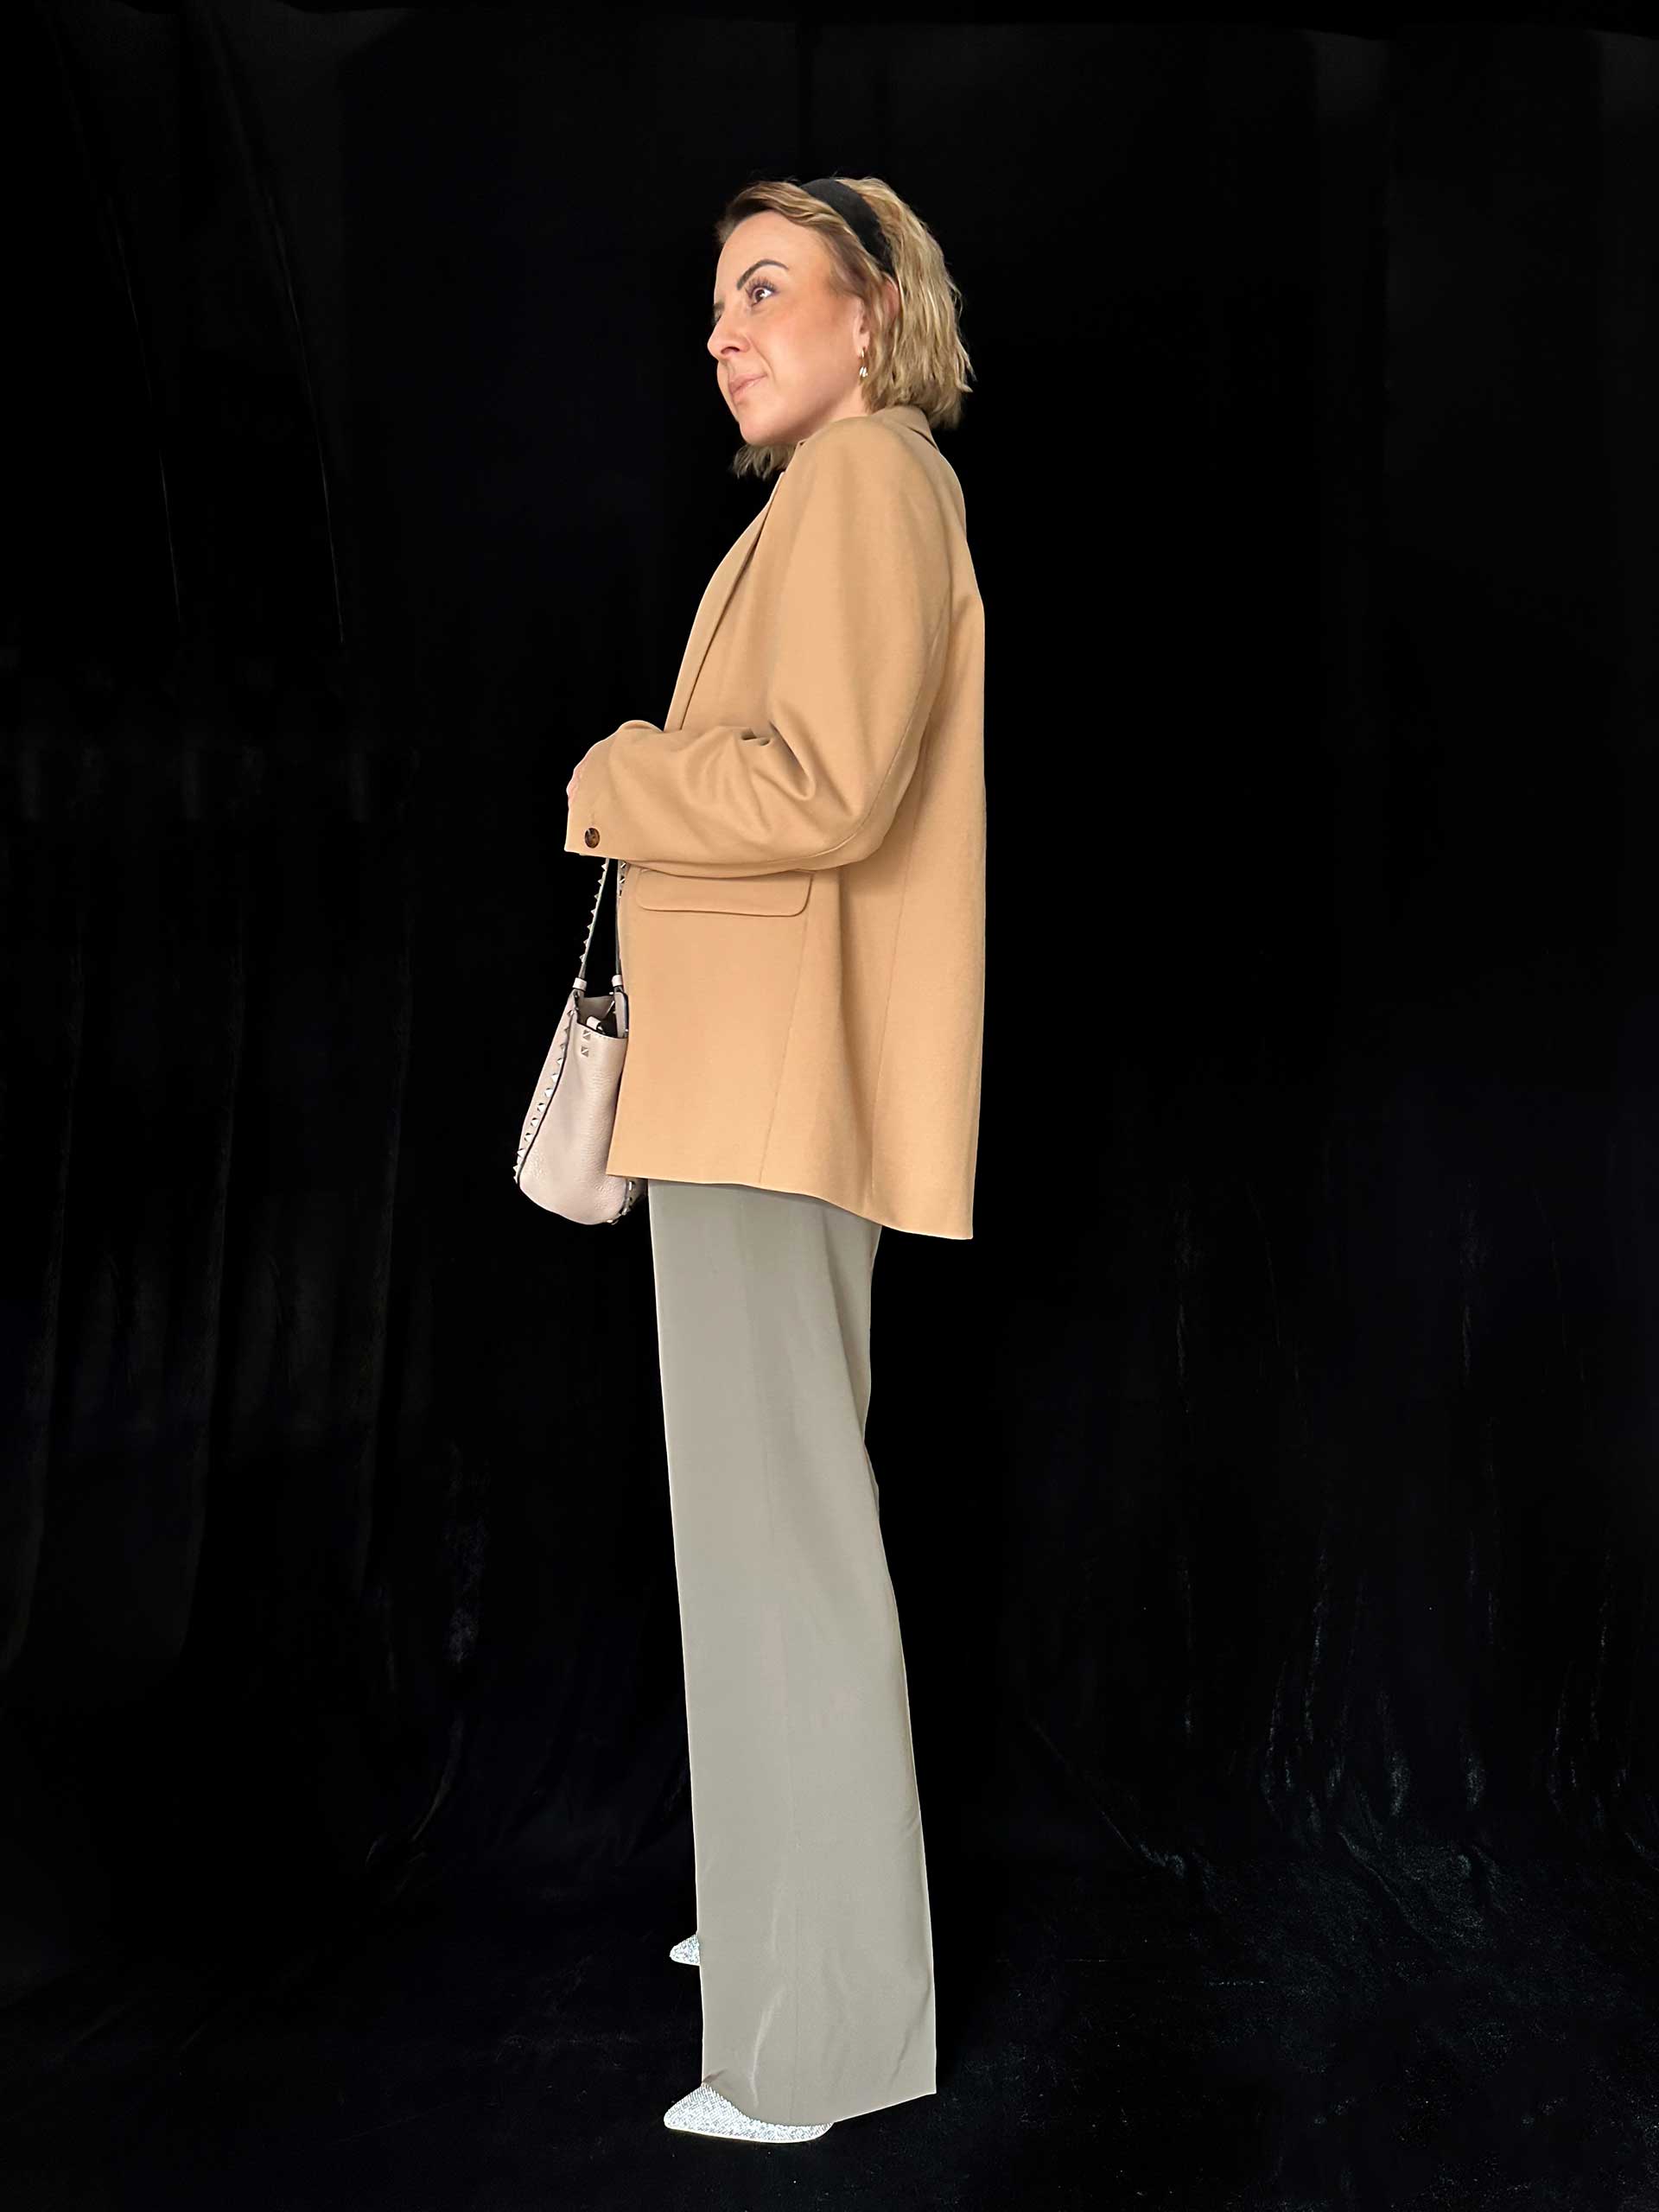 3 Business Casual Outfits fürs Büro gibt es jetzt am Modeblog. Ich erkläre dir den bequemen Dresscode und gebe dir Styling-Tipps für ein professionelles Auftreten im Job! www.whoismocca.com